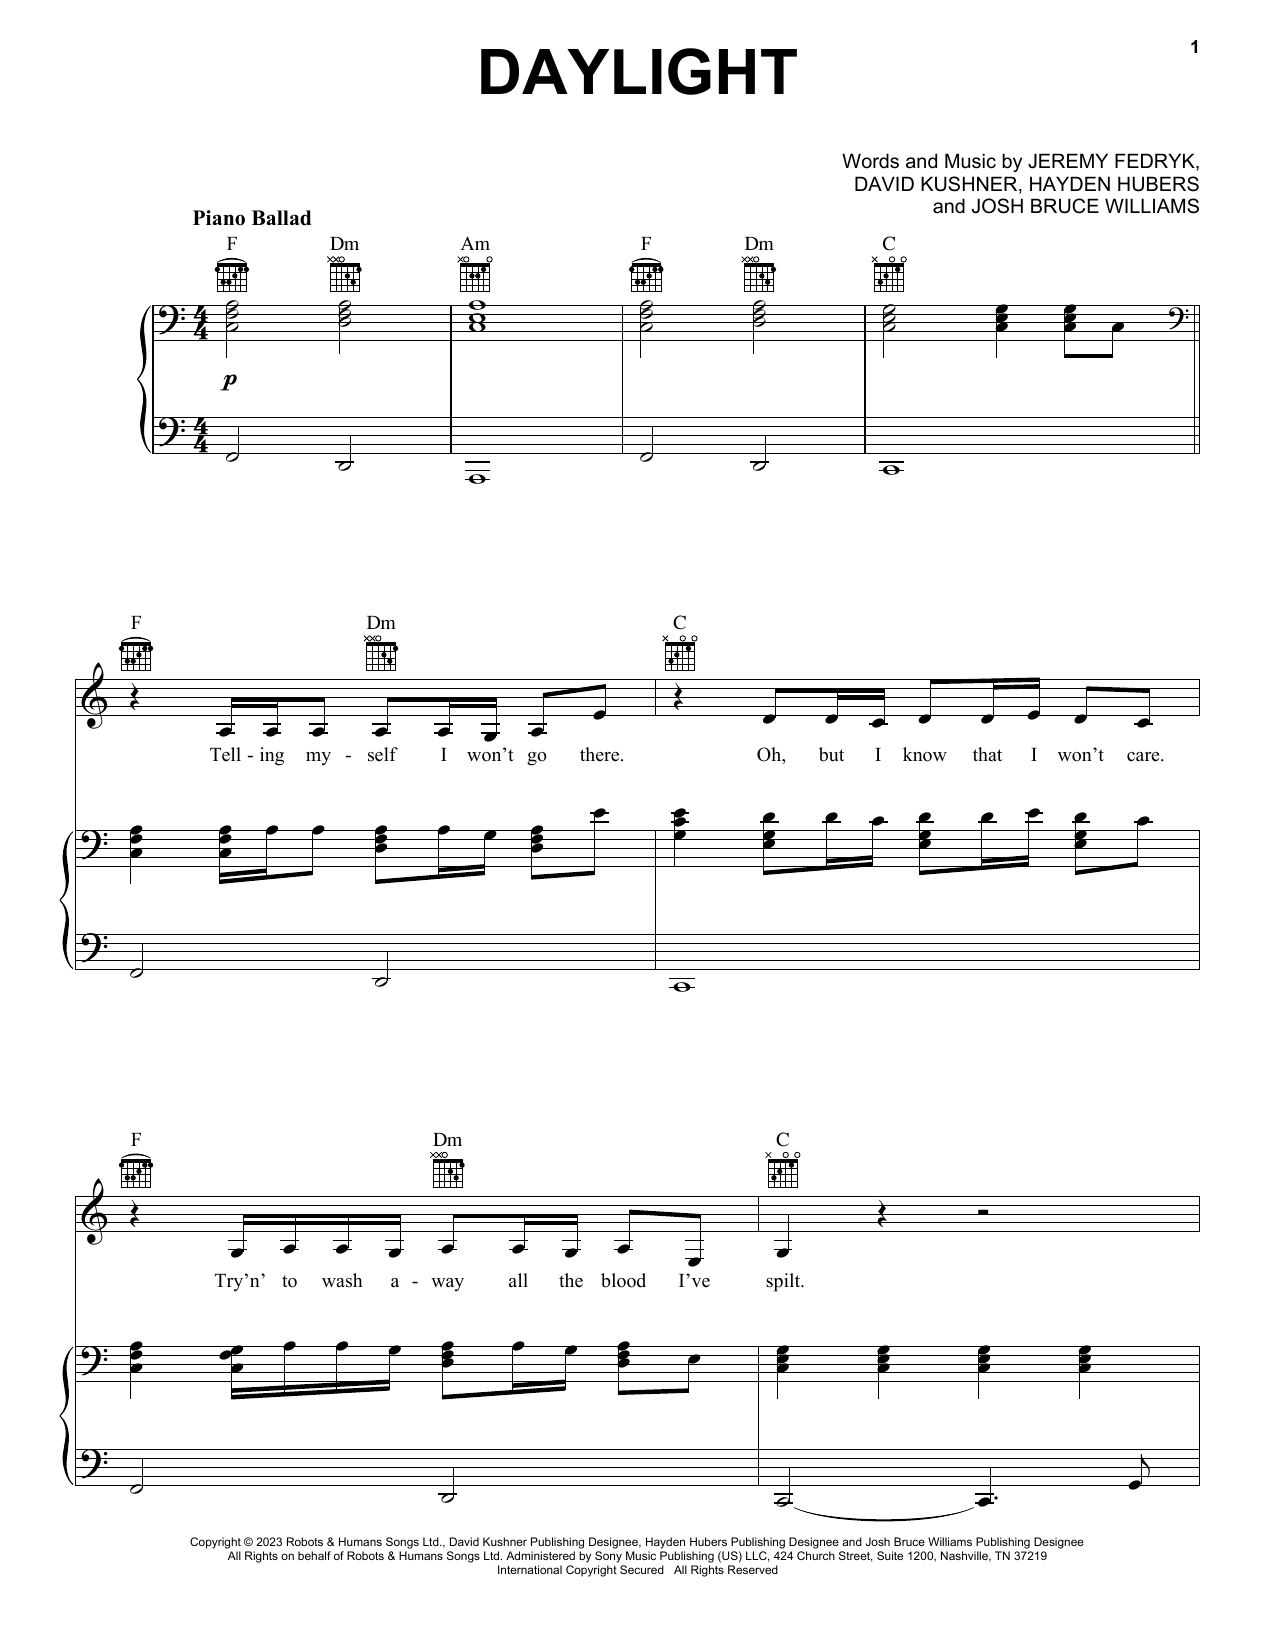 David Kushner Daylight sheet music notes and chords. Download Printable PDF.